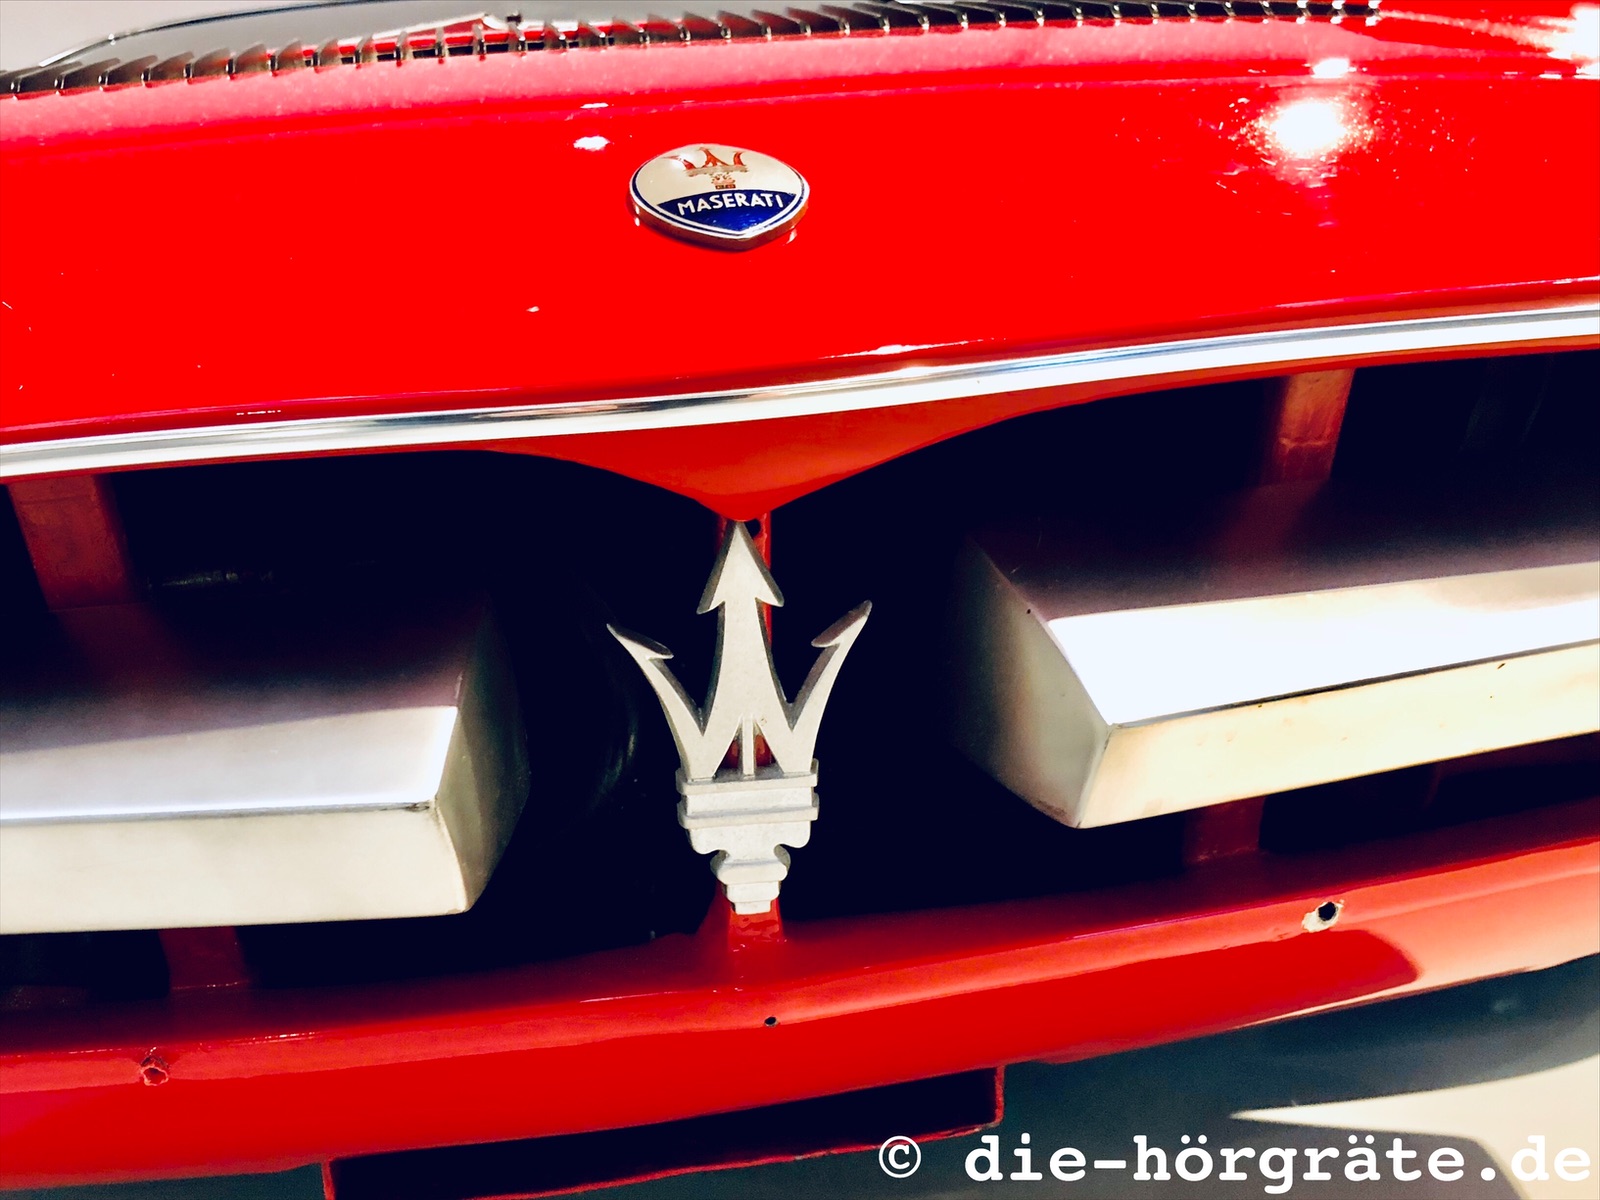 Ausschnitt von einem roten Maserati